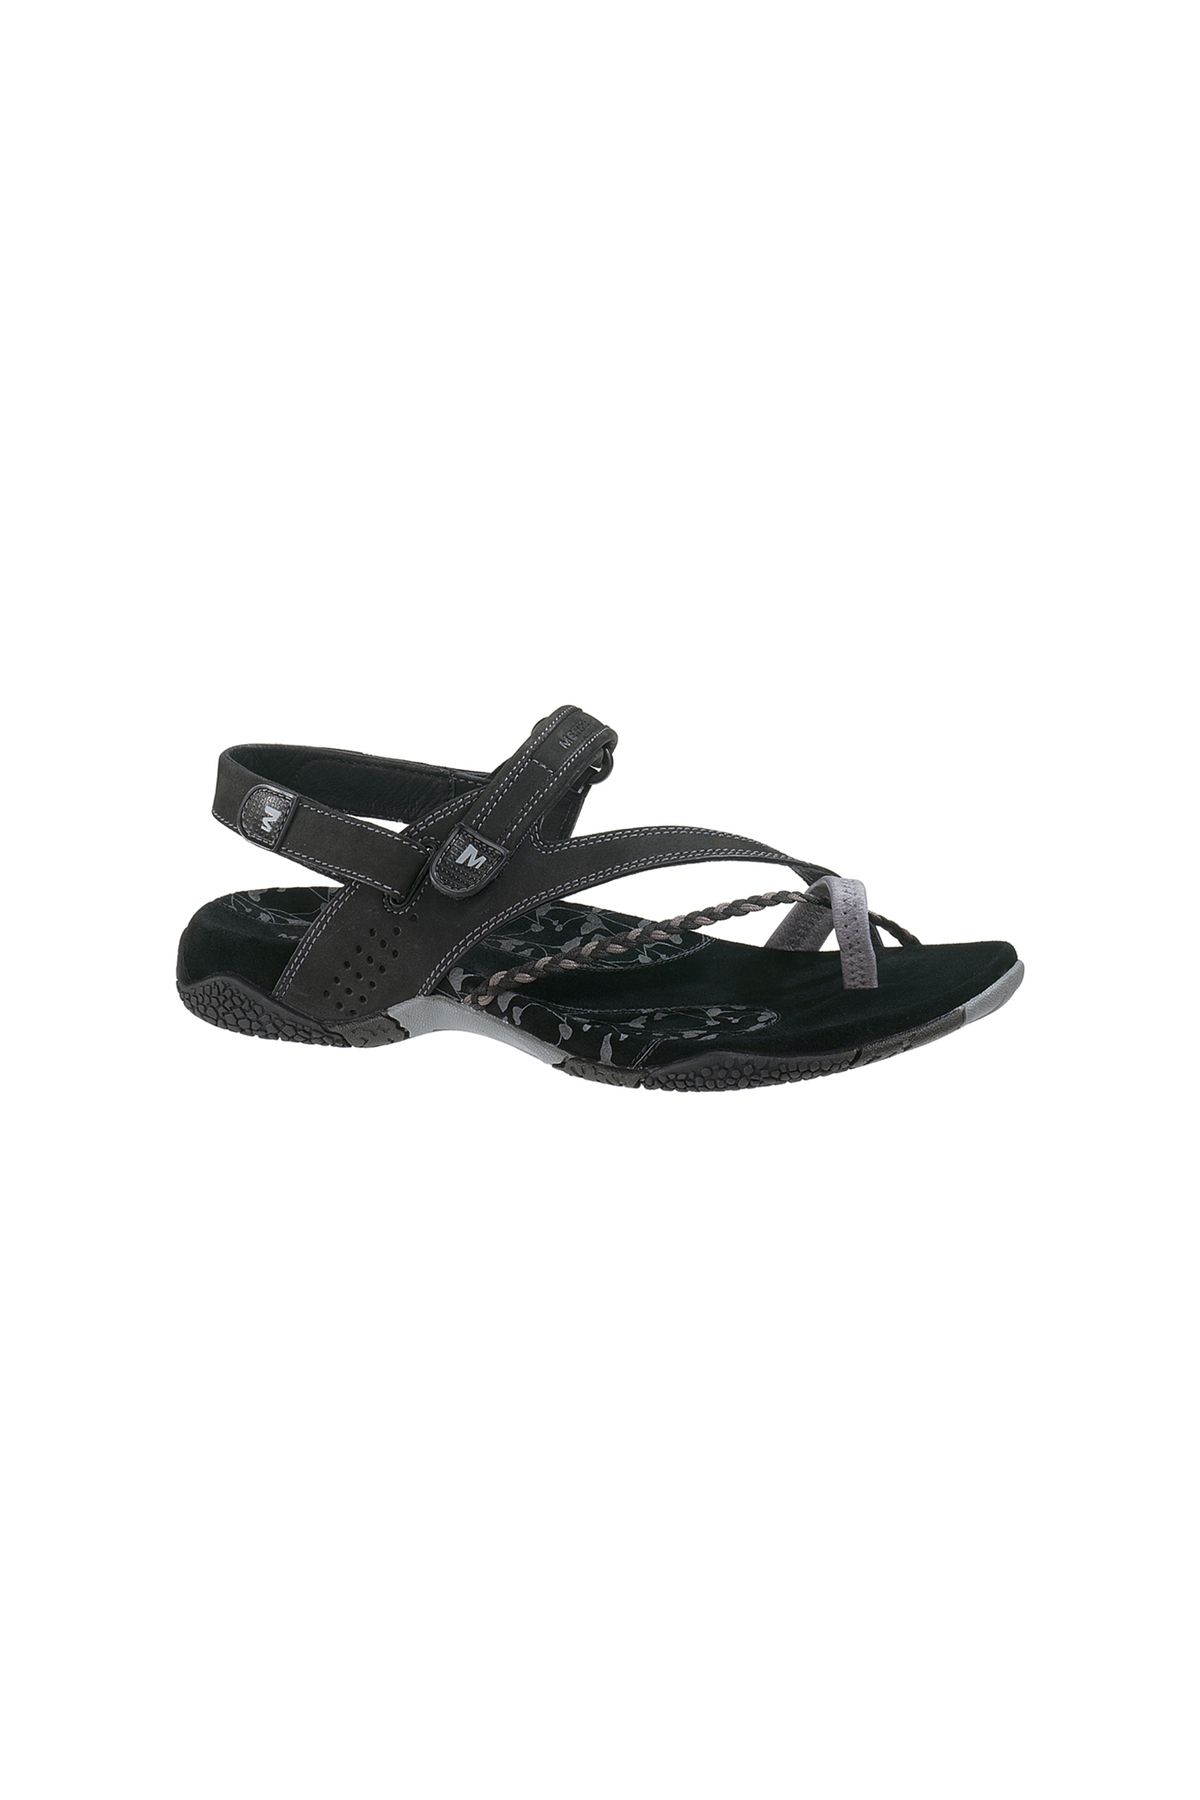 Merrell J36420 Siena Black Kadın Sandalet